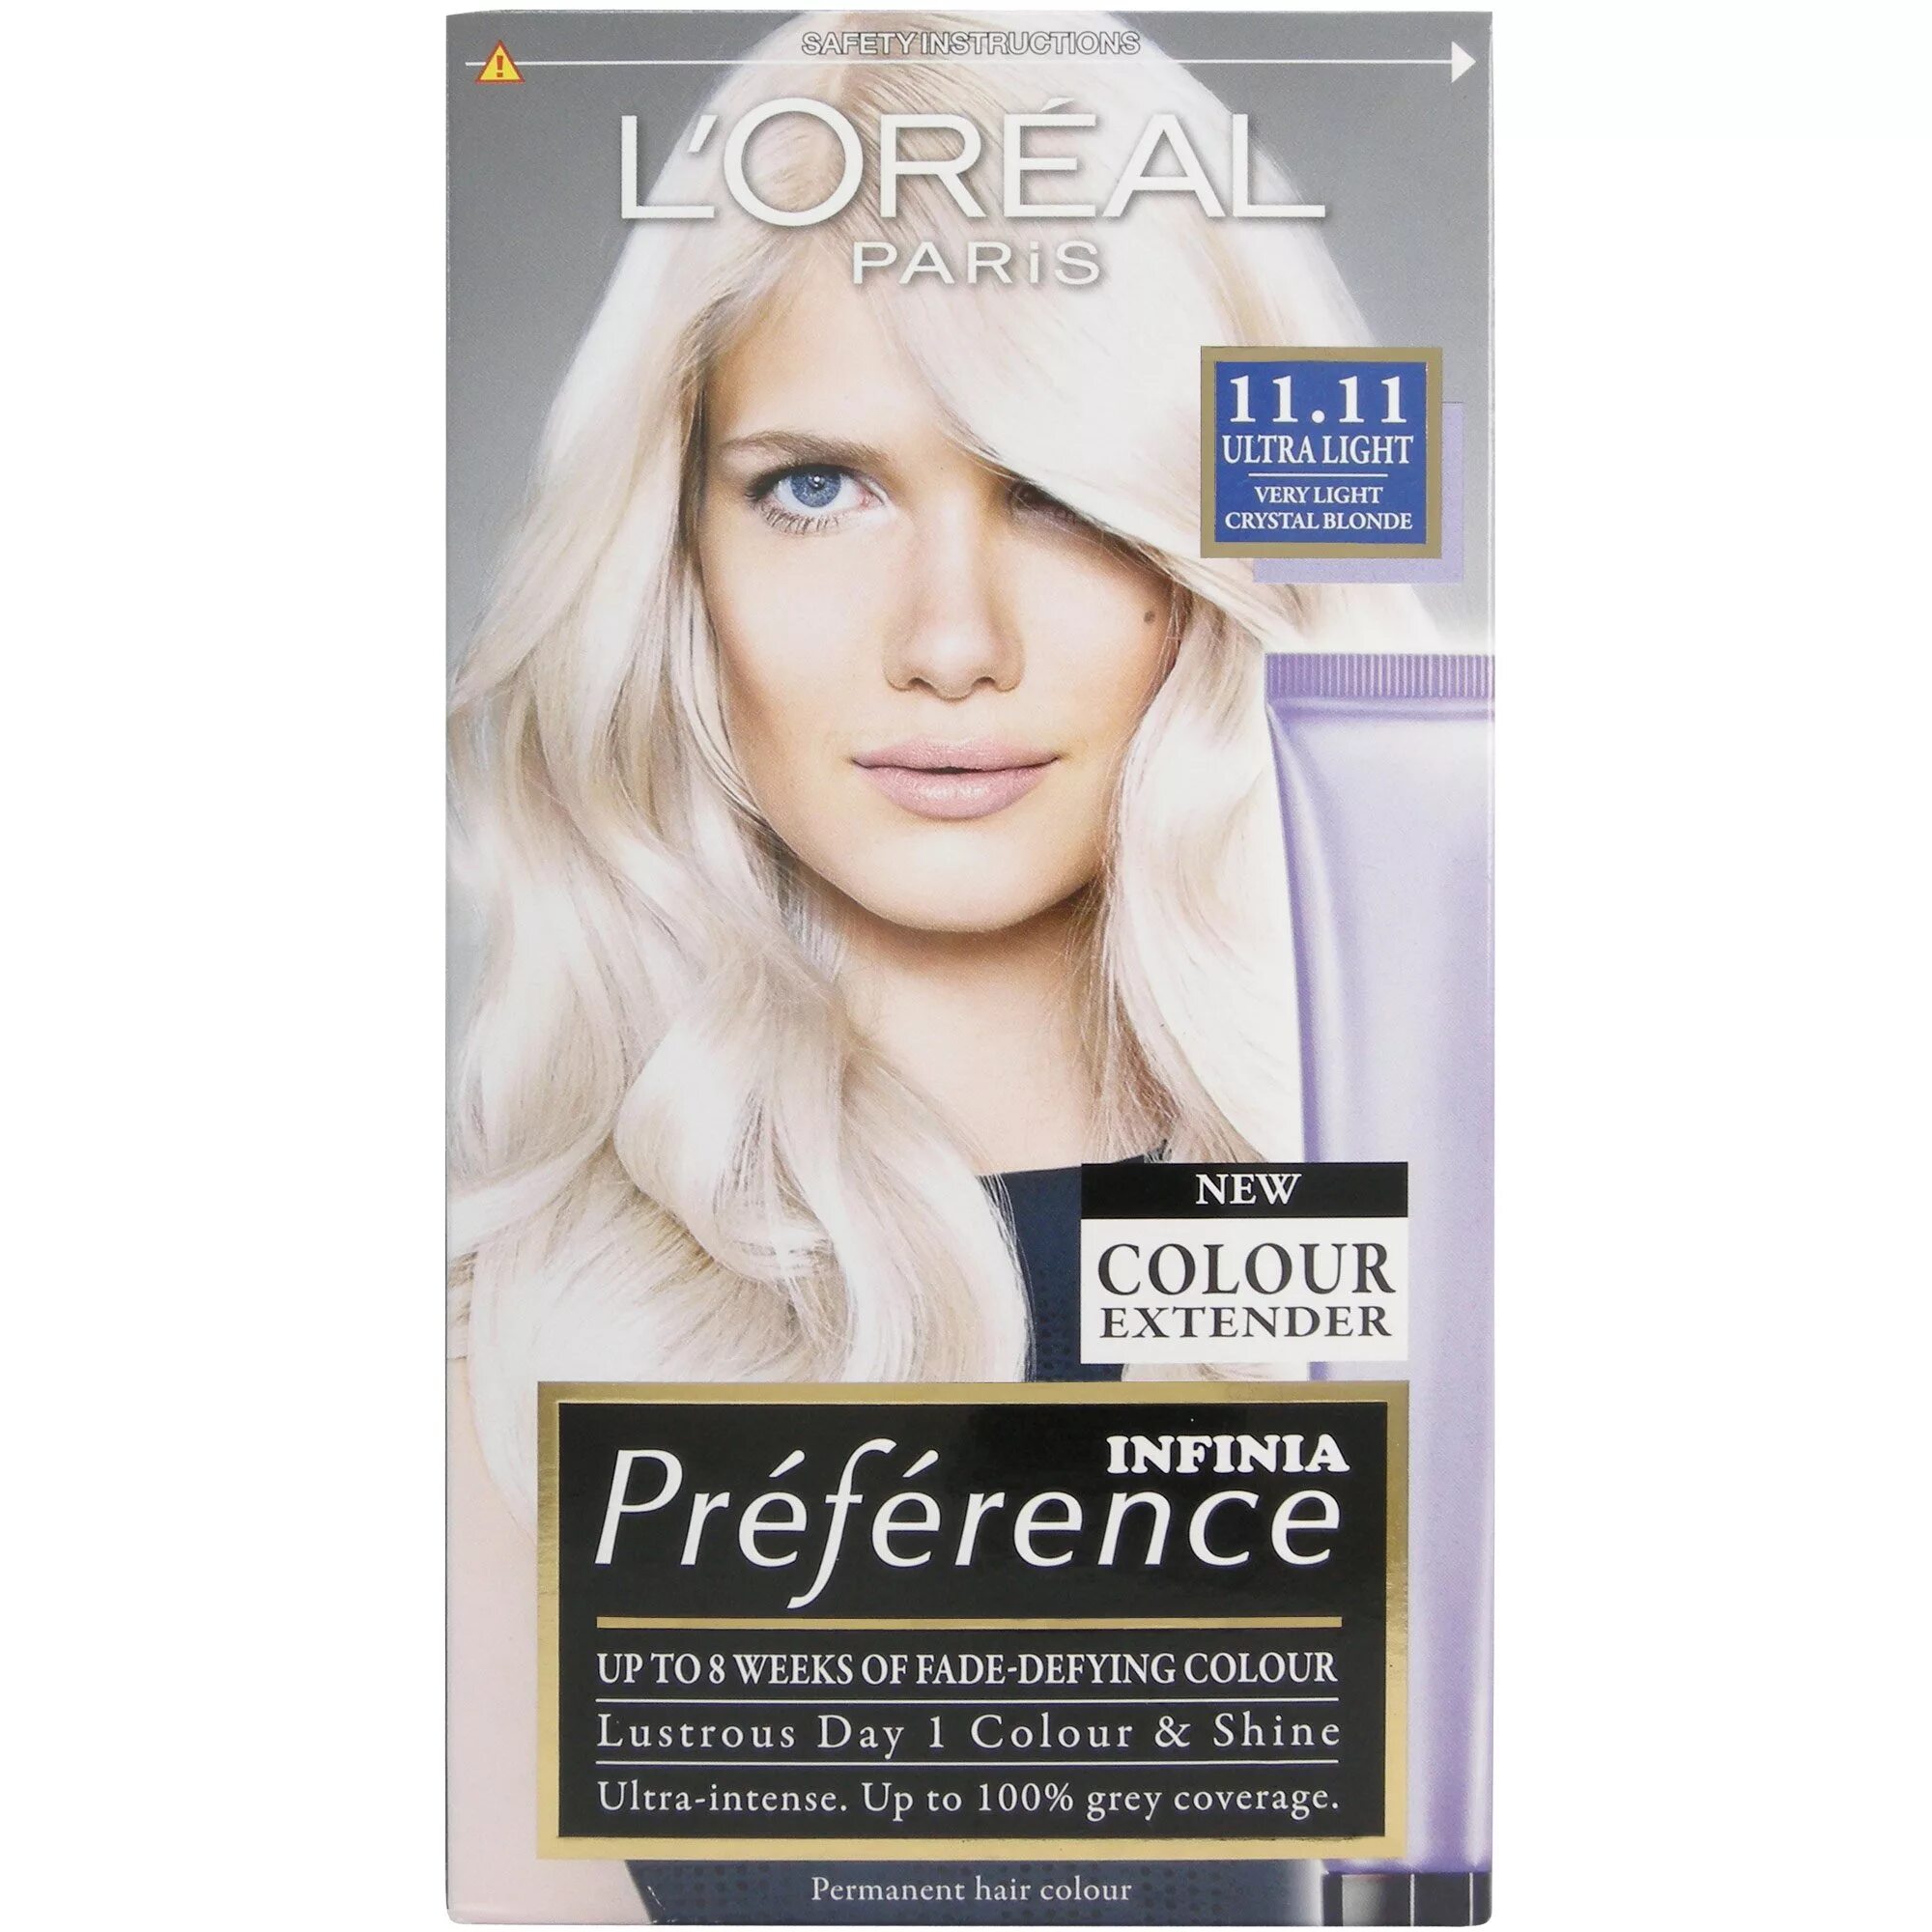 Преферанс 11.21. L'Oreal Paris preference осветлитель для волос, ультра-платиновый блонд. Лореаль преферанс блонд. Лореаль преферанс платина ультра блонд.